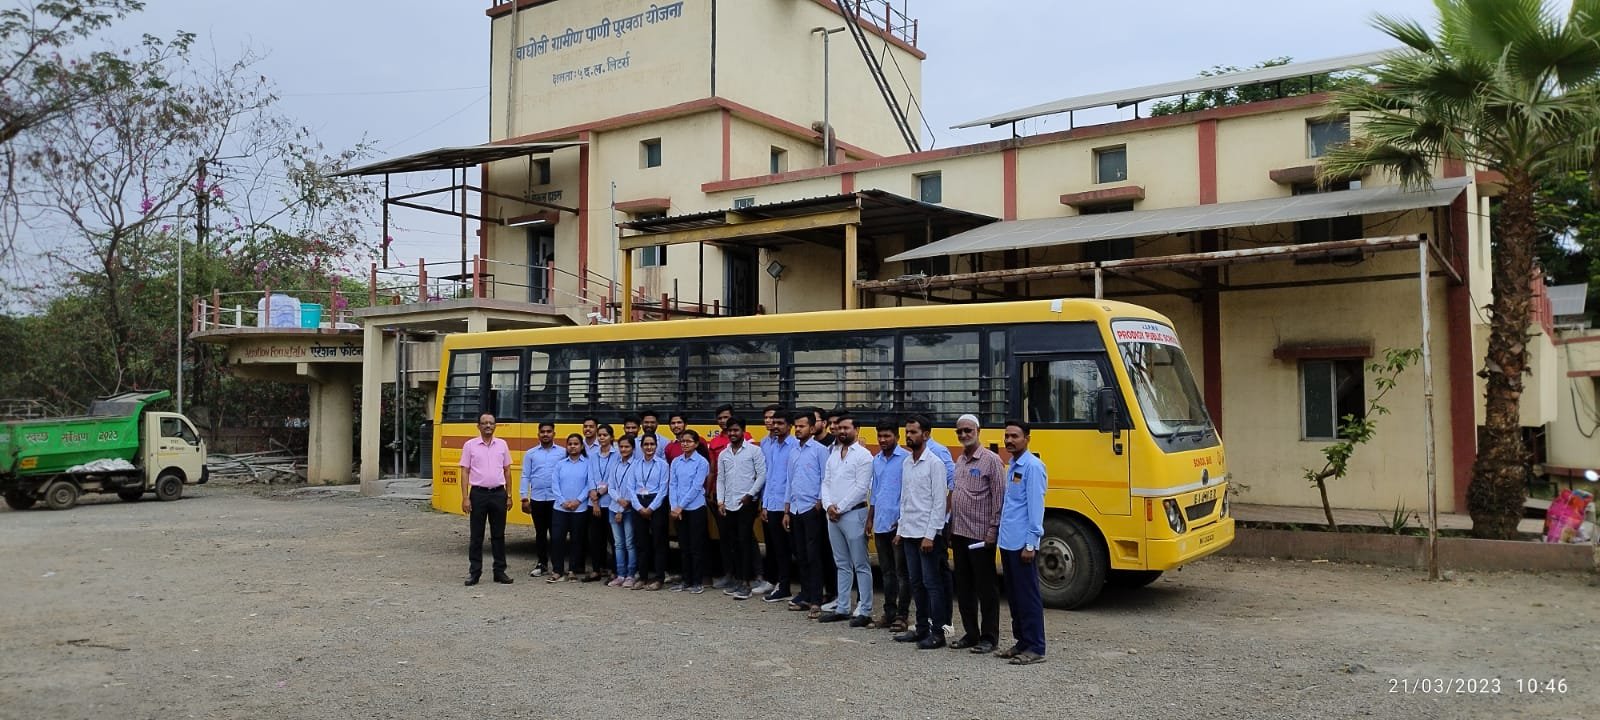 Industrial Visit to Wagholi Grameen Pani Puravatha Yojana, Wagholi